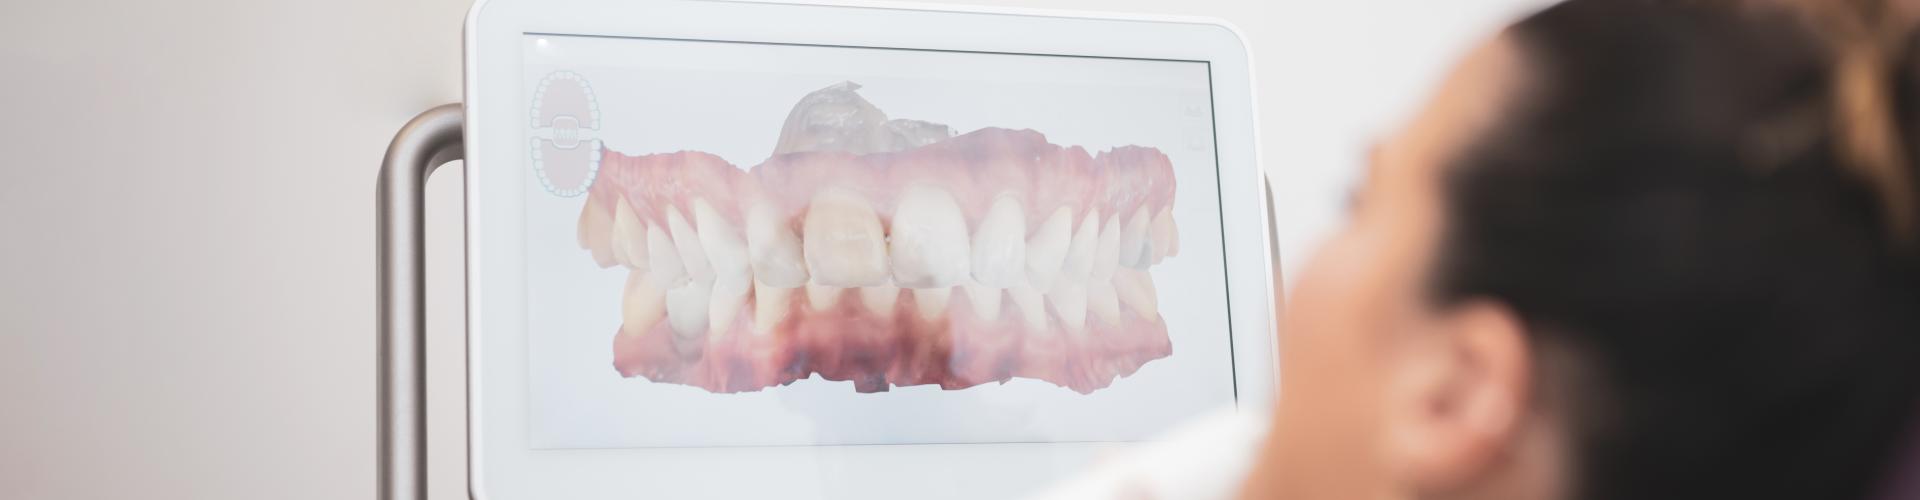 Digitális fogászat - a legmodernebb fogászati megoldások